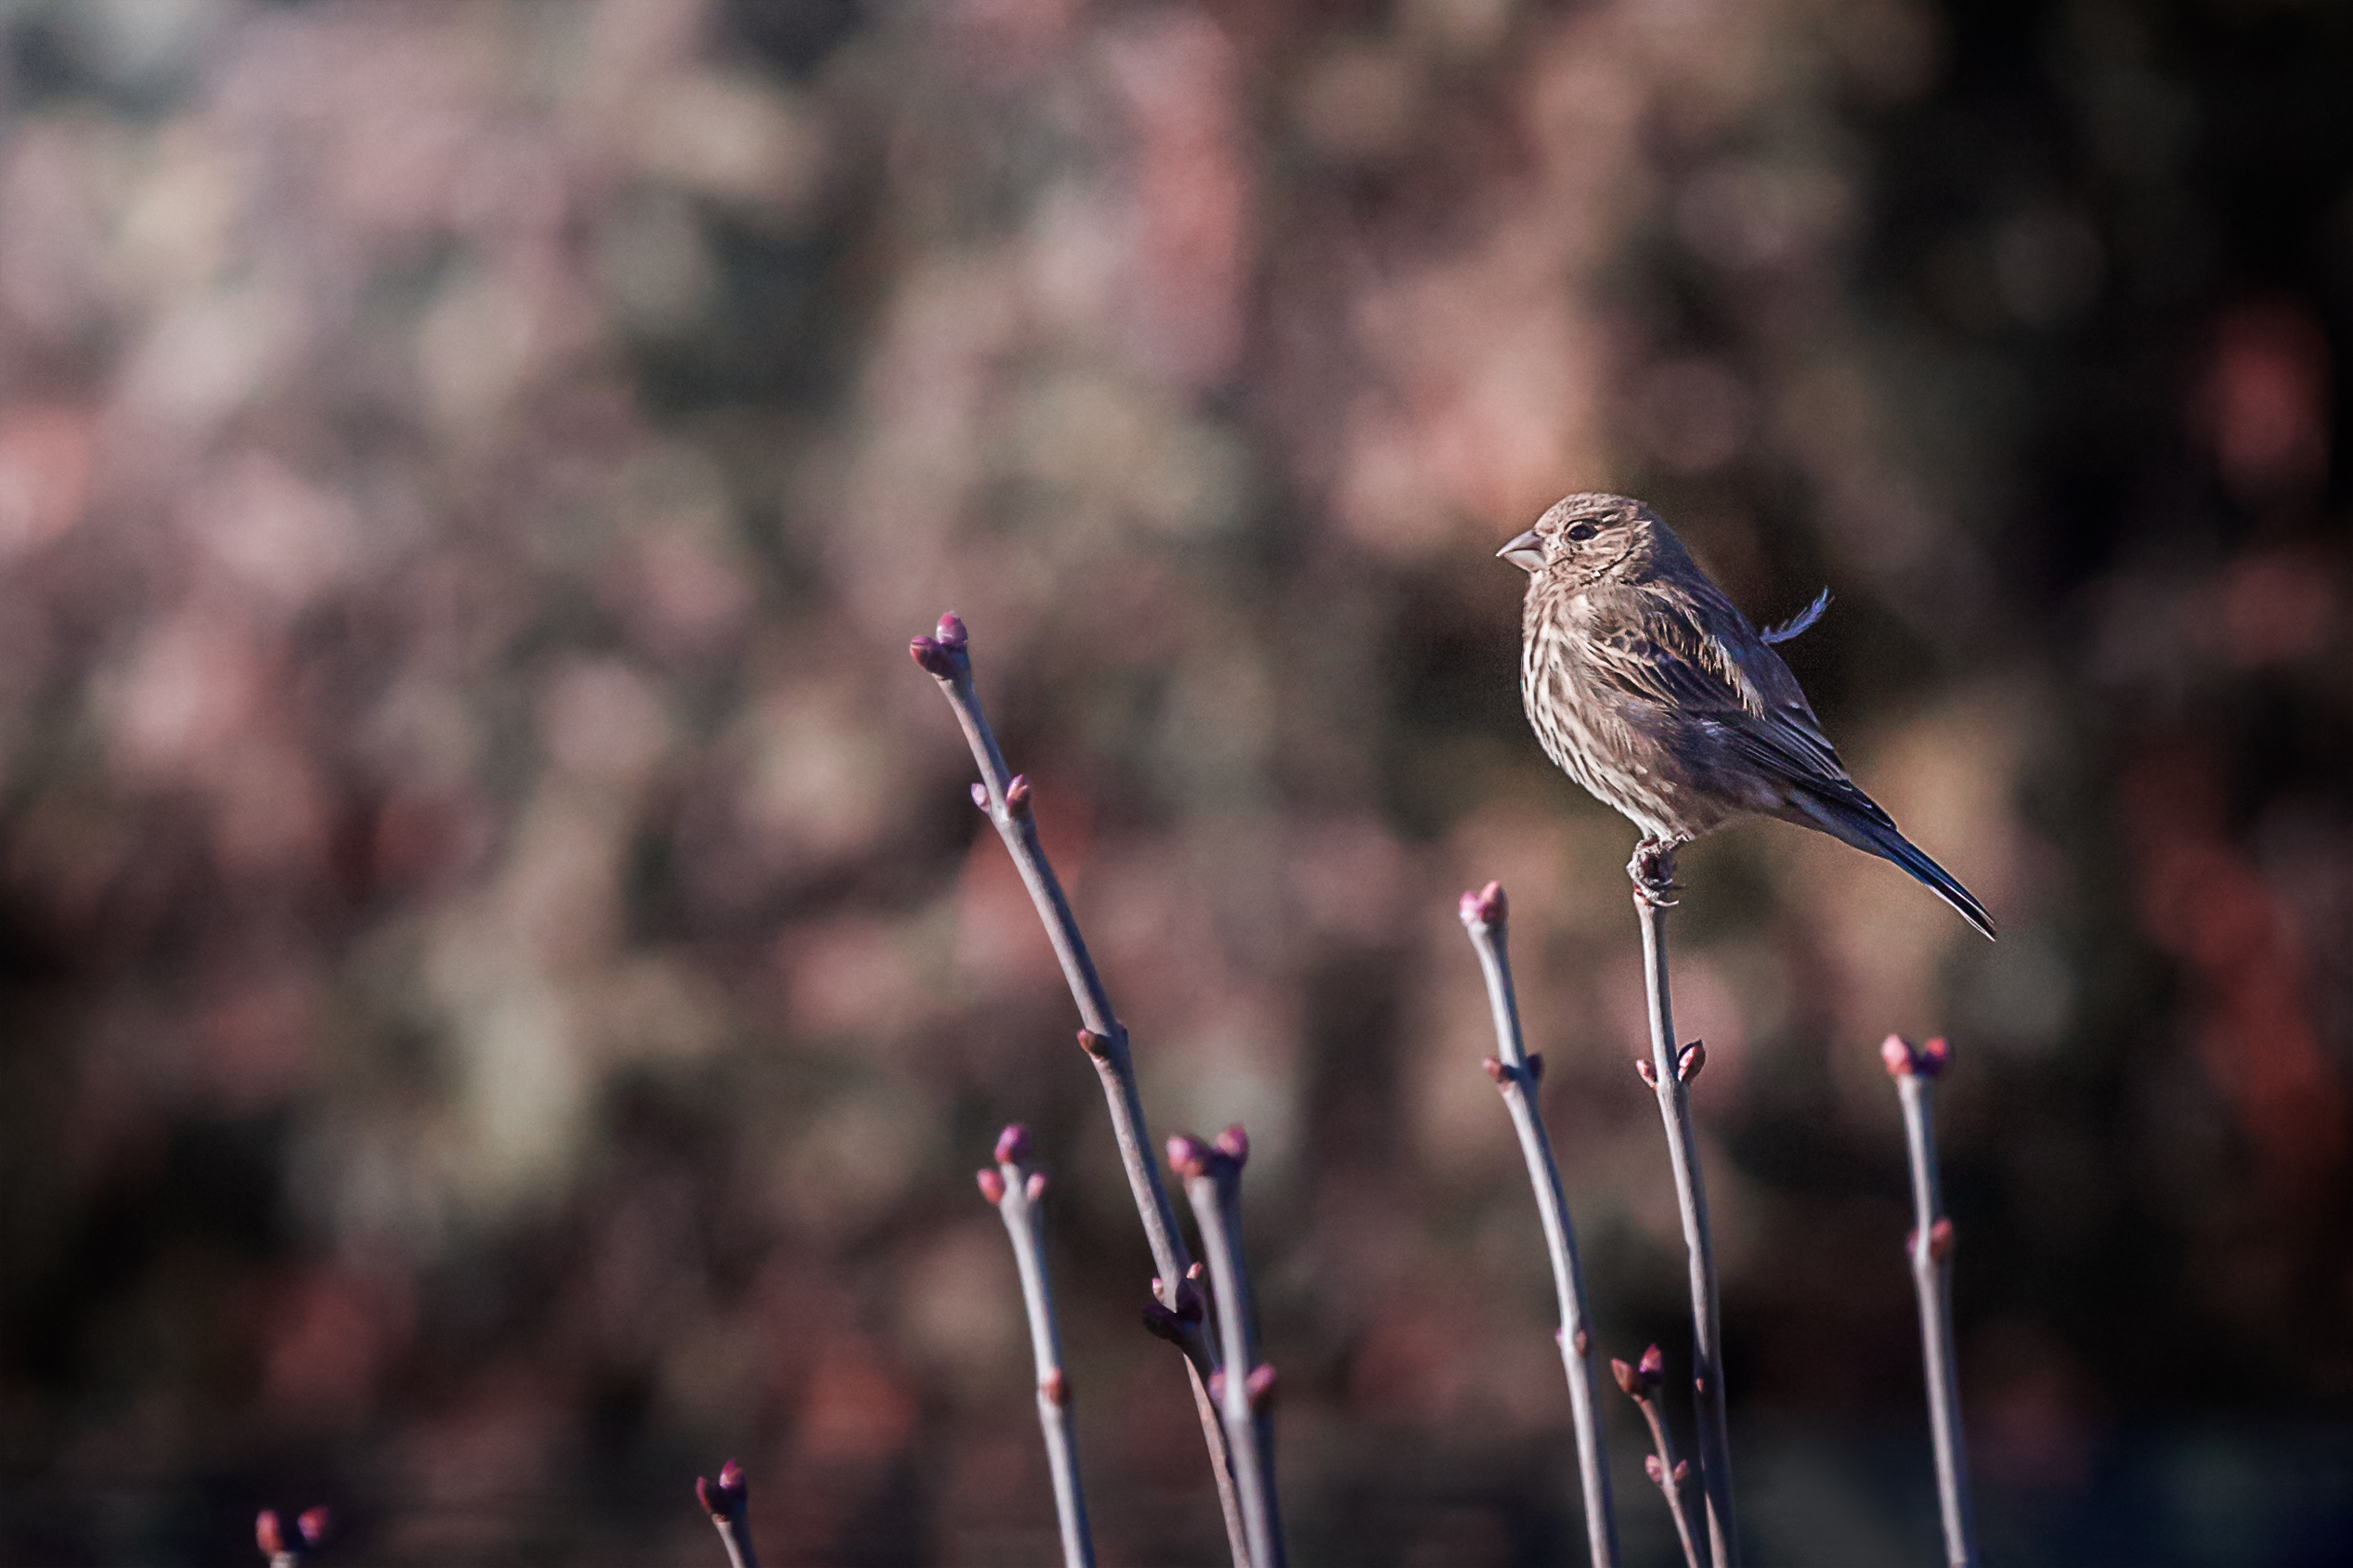 Intro to Wildlife Photography - Bird